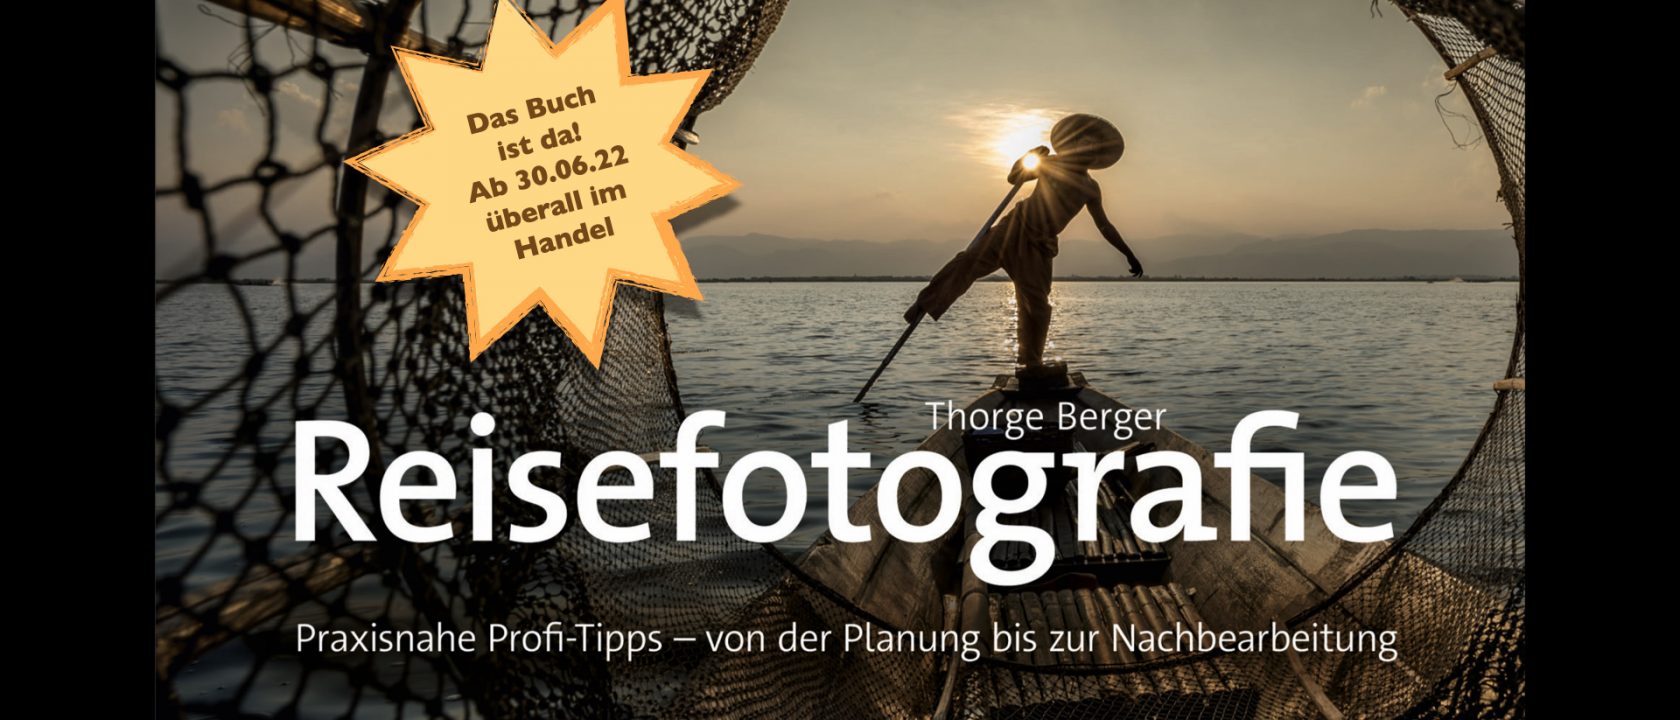 Das Reisefotografie-Buch von Thorge Berger ist da